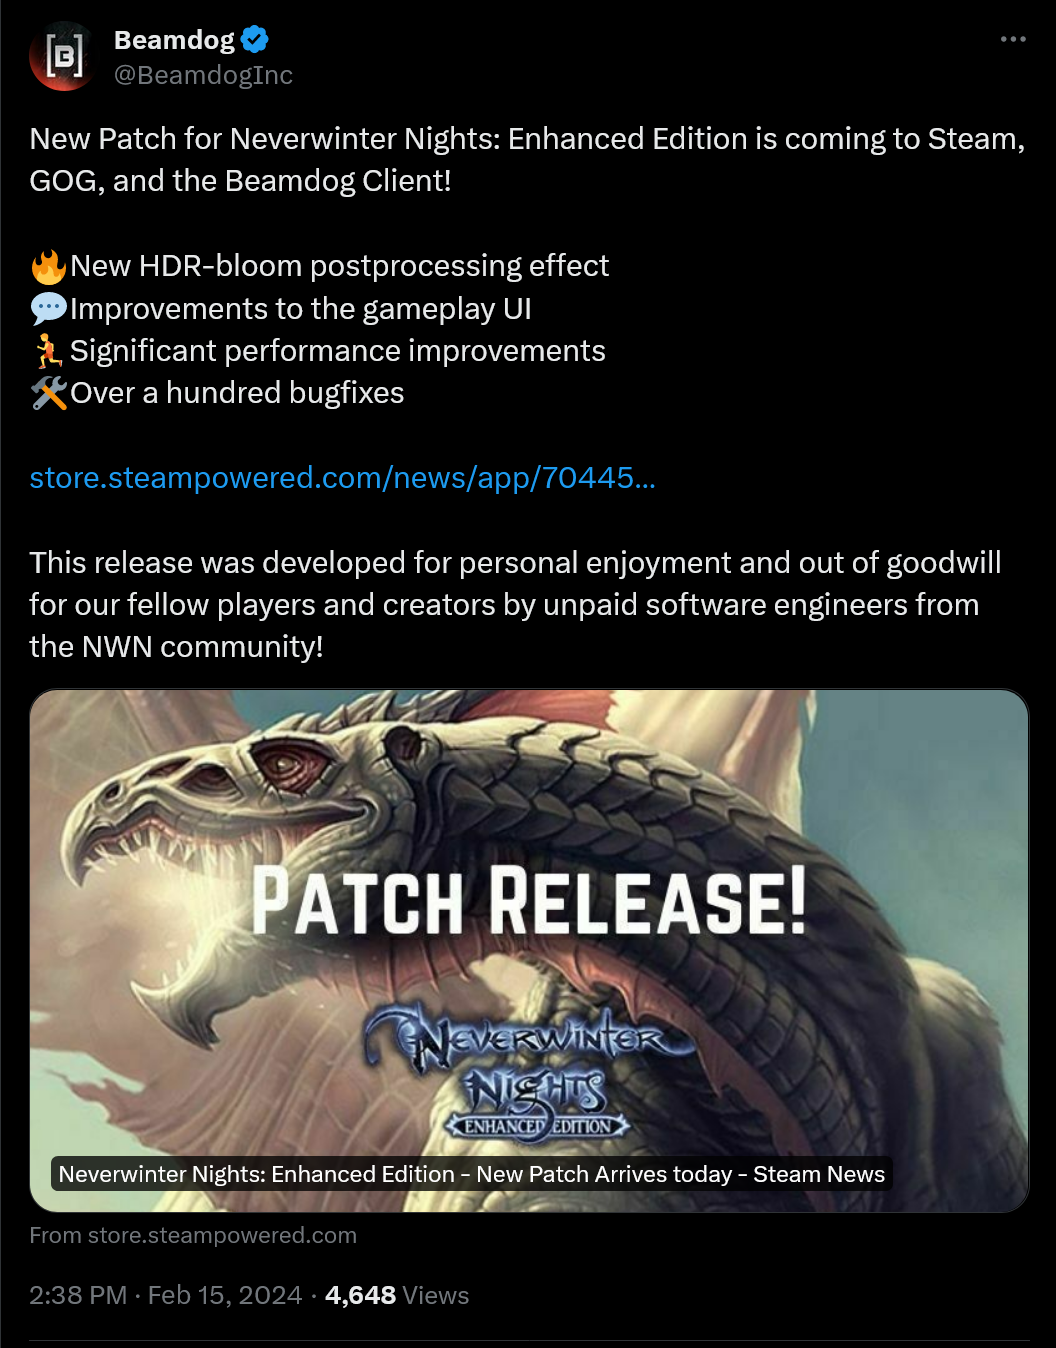 ¡Nuevo parche para Neverwinter Nights: Enhanced Edition llegará a Steam, GOG y Beamdog Client!  🔥Nuevo efecto de posprocesamiento HDR-bloom 💬Mejoras en la interfaz de usuario del juego 🏃Mejoras significativas en el rendimiento 🛠Más de cien correcciones de errores https://store.steampowered.com/news/app/704450/view/7597079377547967509